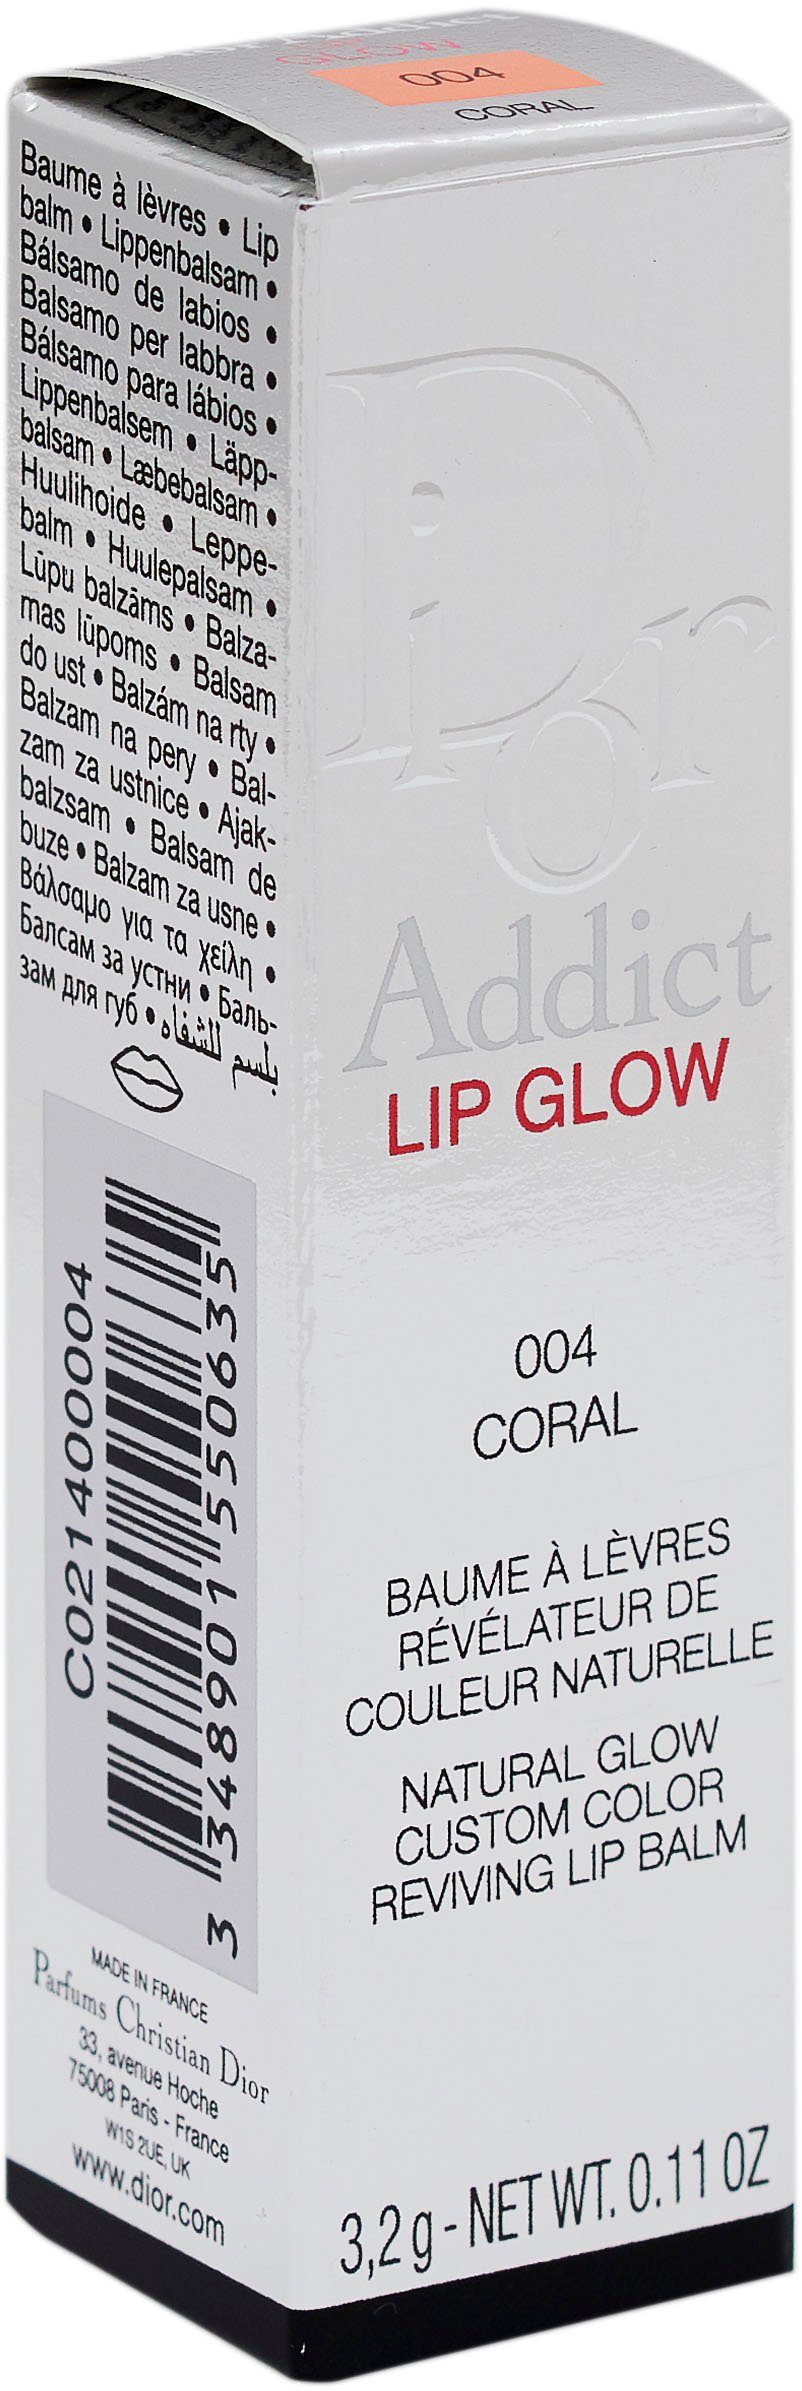 Glow 004 Lip Dior Dior Addict Lippenbalsam Coral